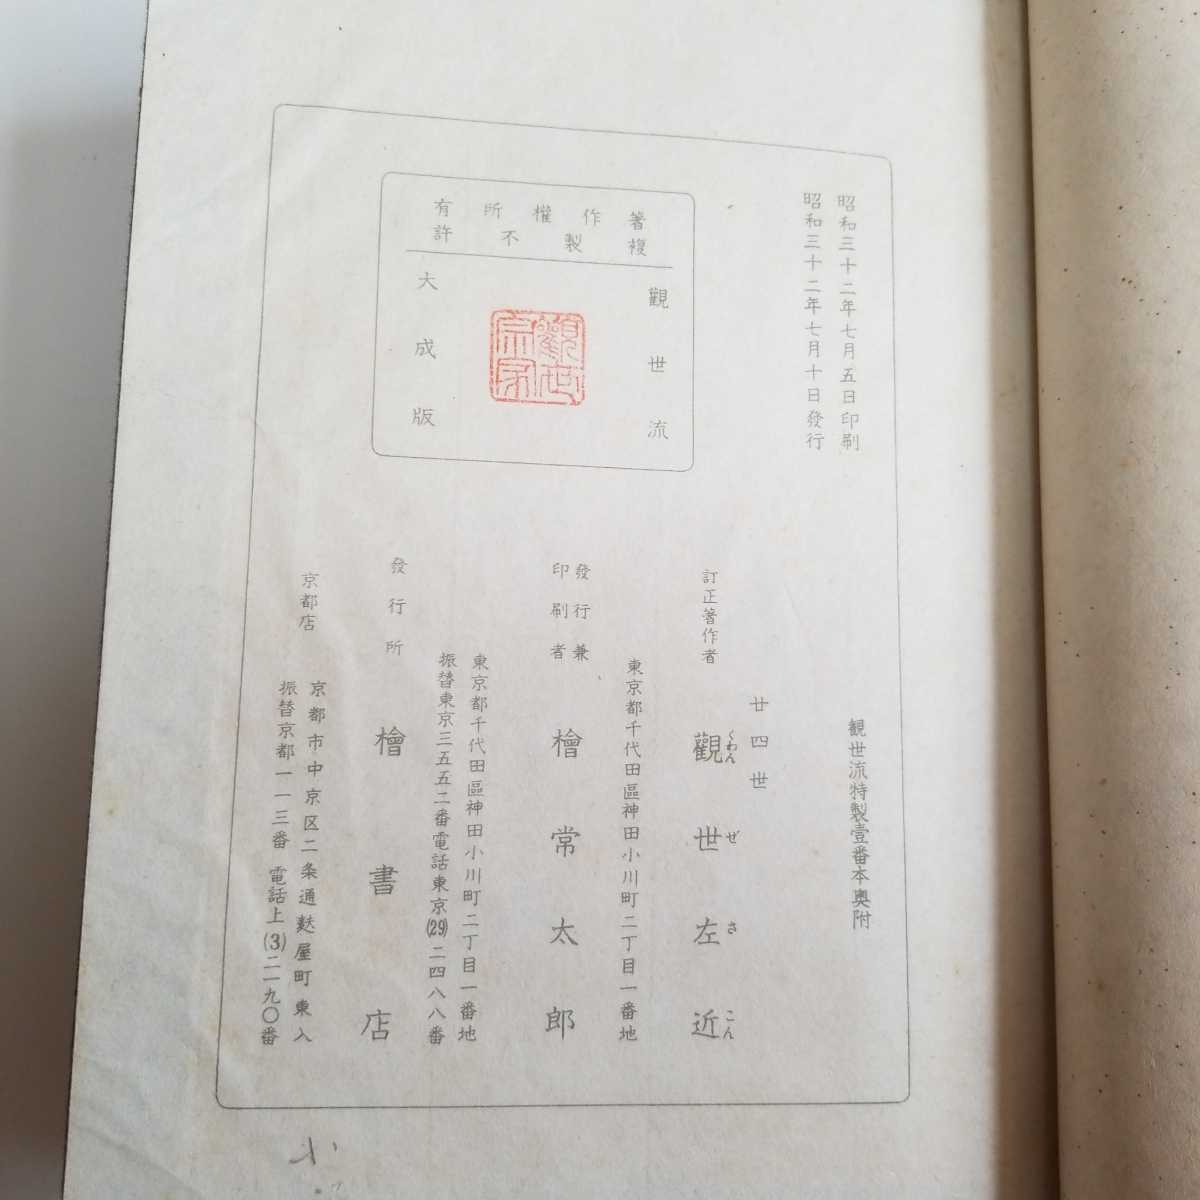 (38) старая книга .... 4 no три ... большой . версия .. левый близко - исправление работа автор Showa 32 год выпуск кипарисовик туполистный книжный магазин нестандартная пересылка 140 иен отправка 